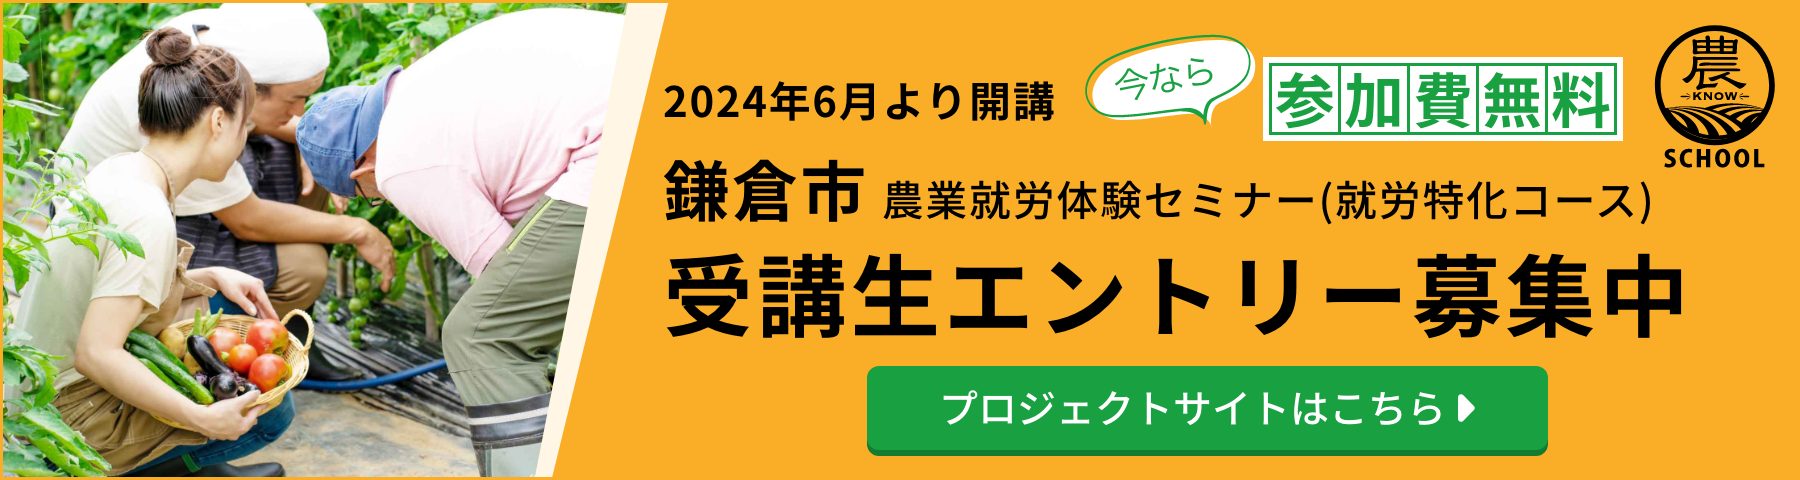 2024年6月より開講 鎌倉市農業就労体験セミナー(就労特化コース) 受講生エントリー募集中